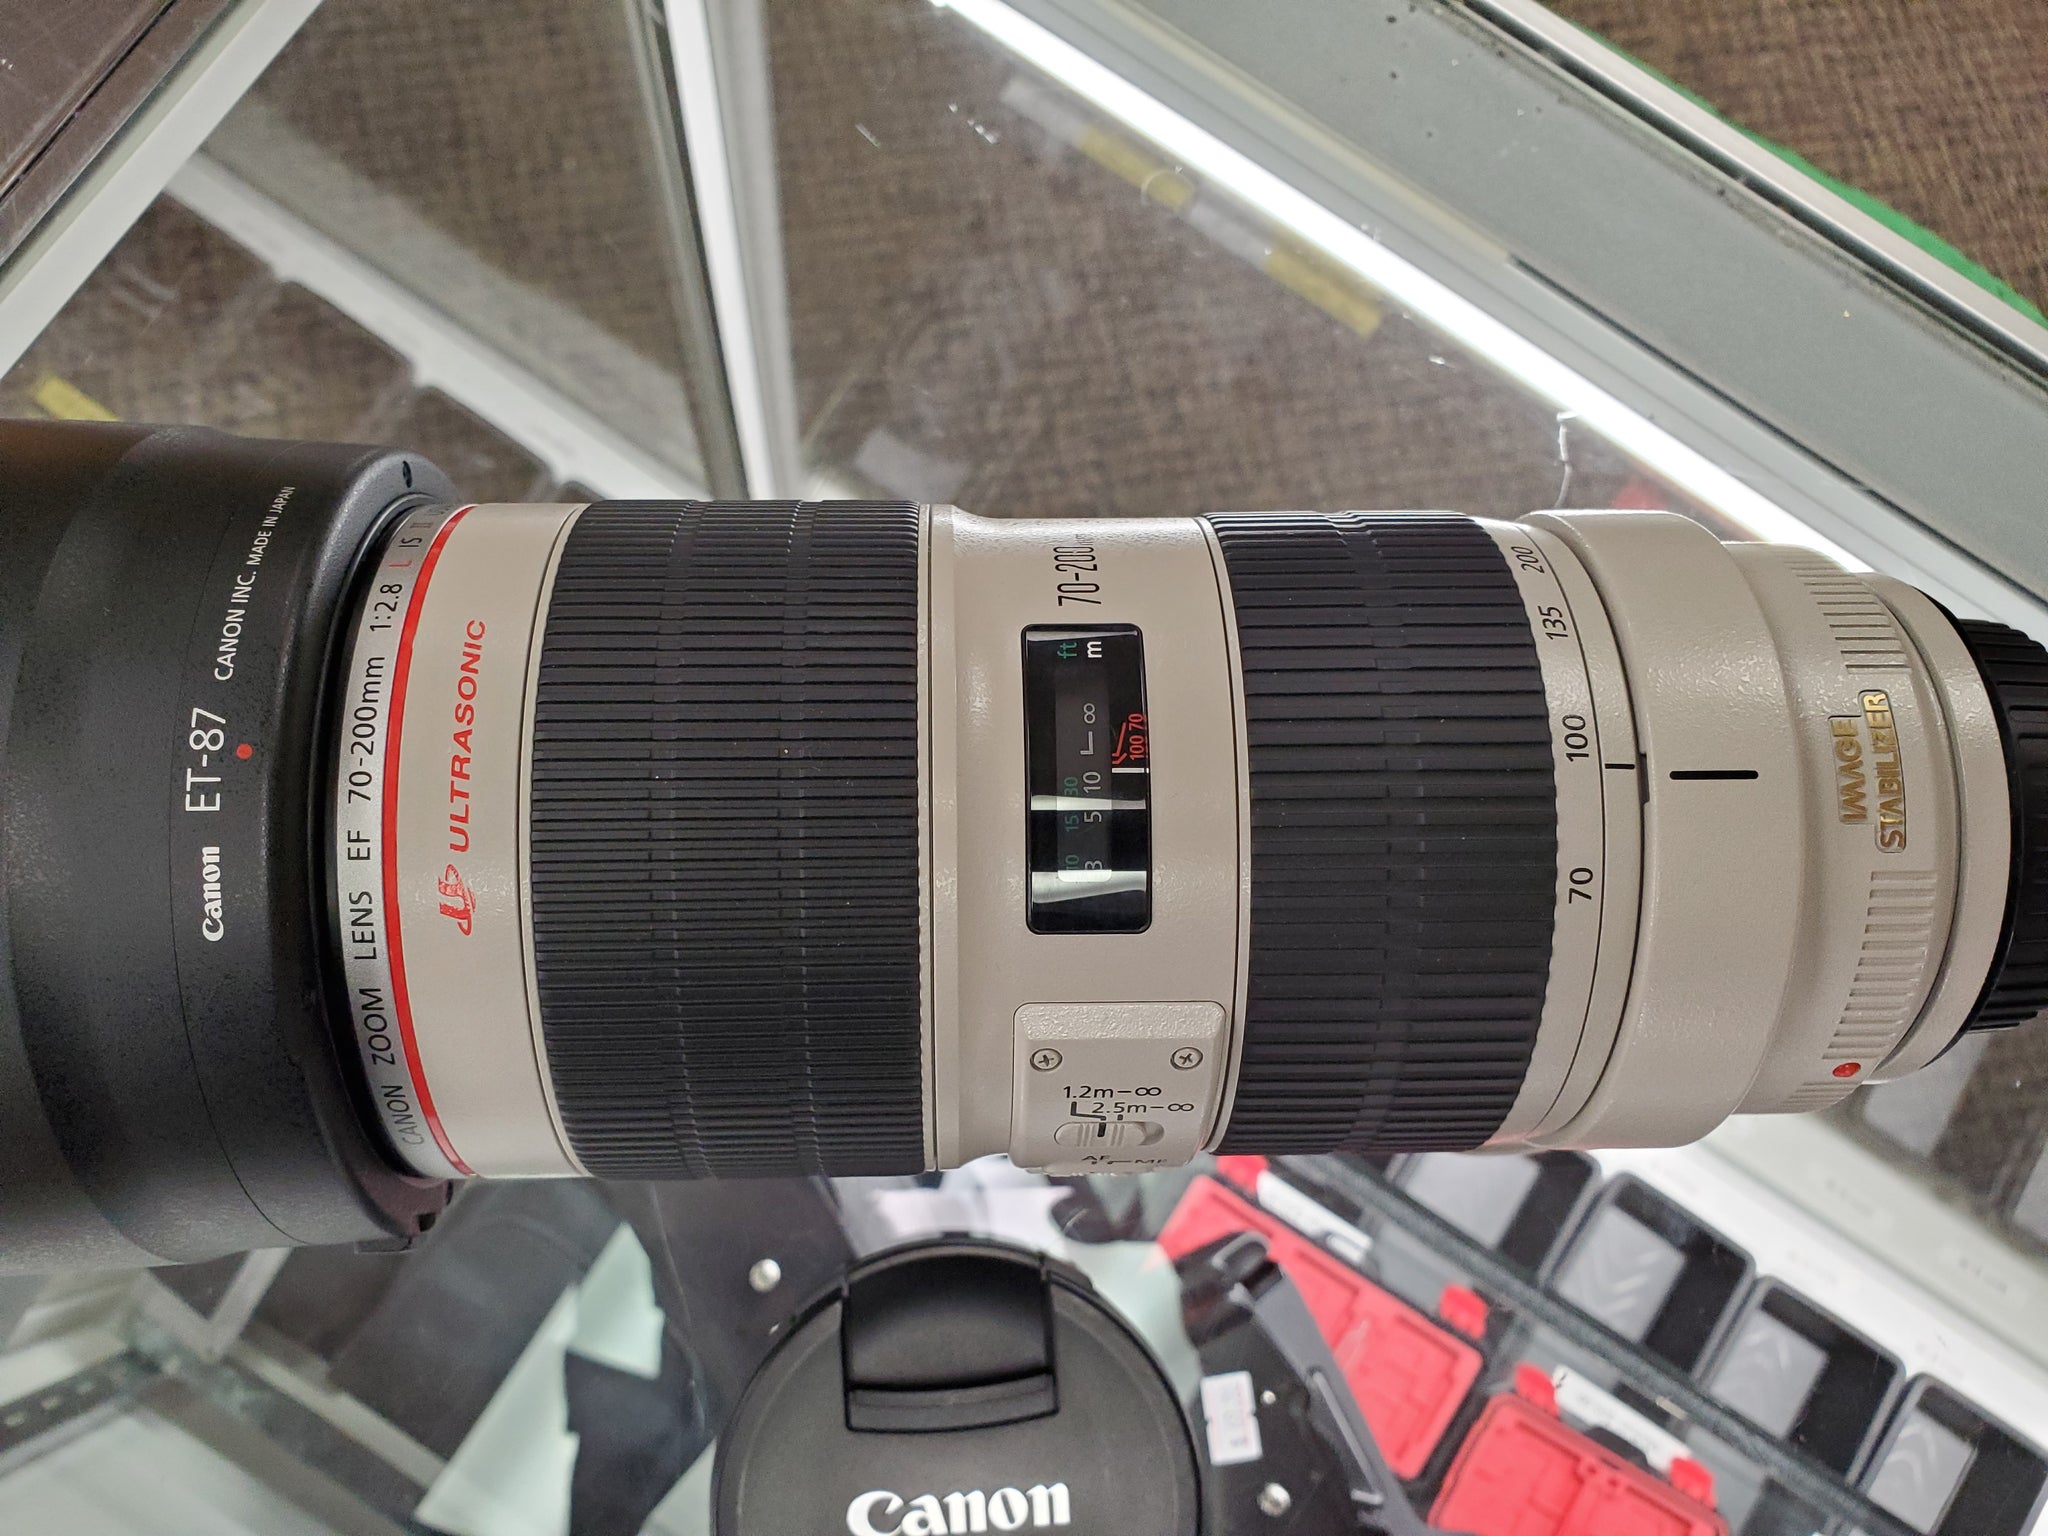 Canon 70-200mm 2.8L IS II USM lens - Pro Full Frame Telephoto